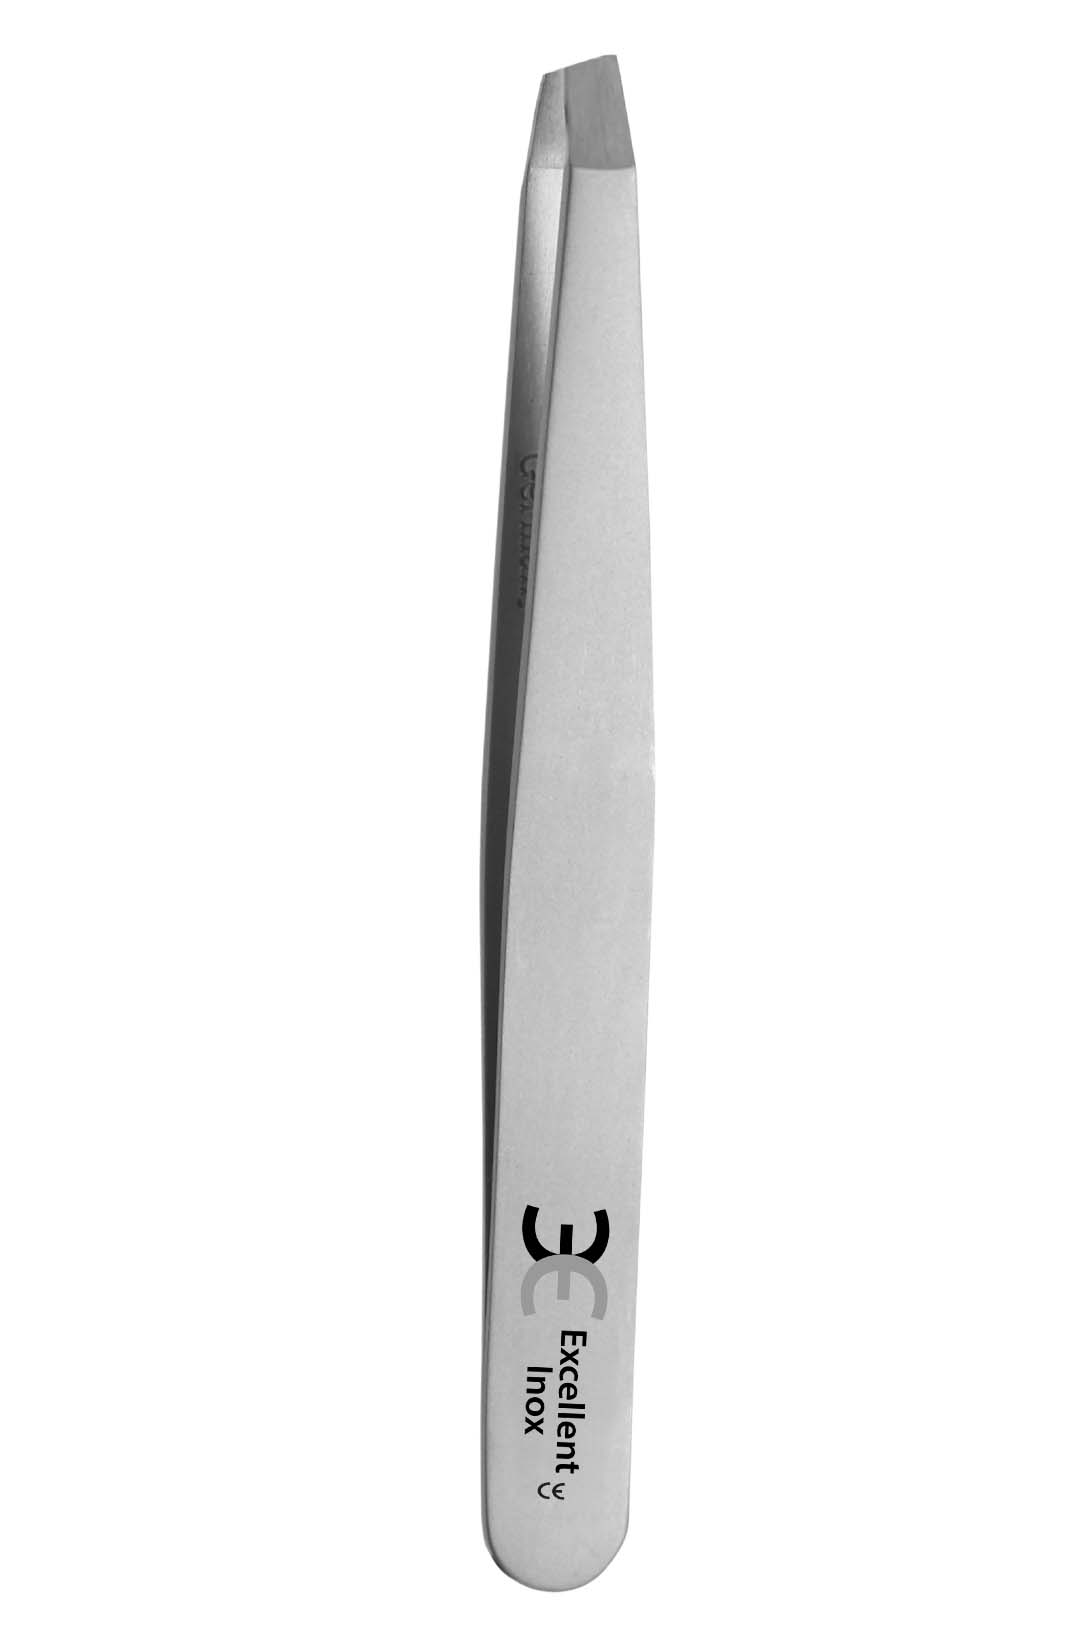 Excellent tweezers 9.5 cm, slanted, stainless steel